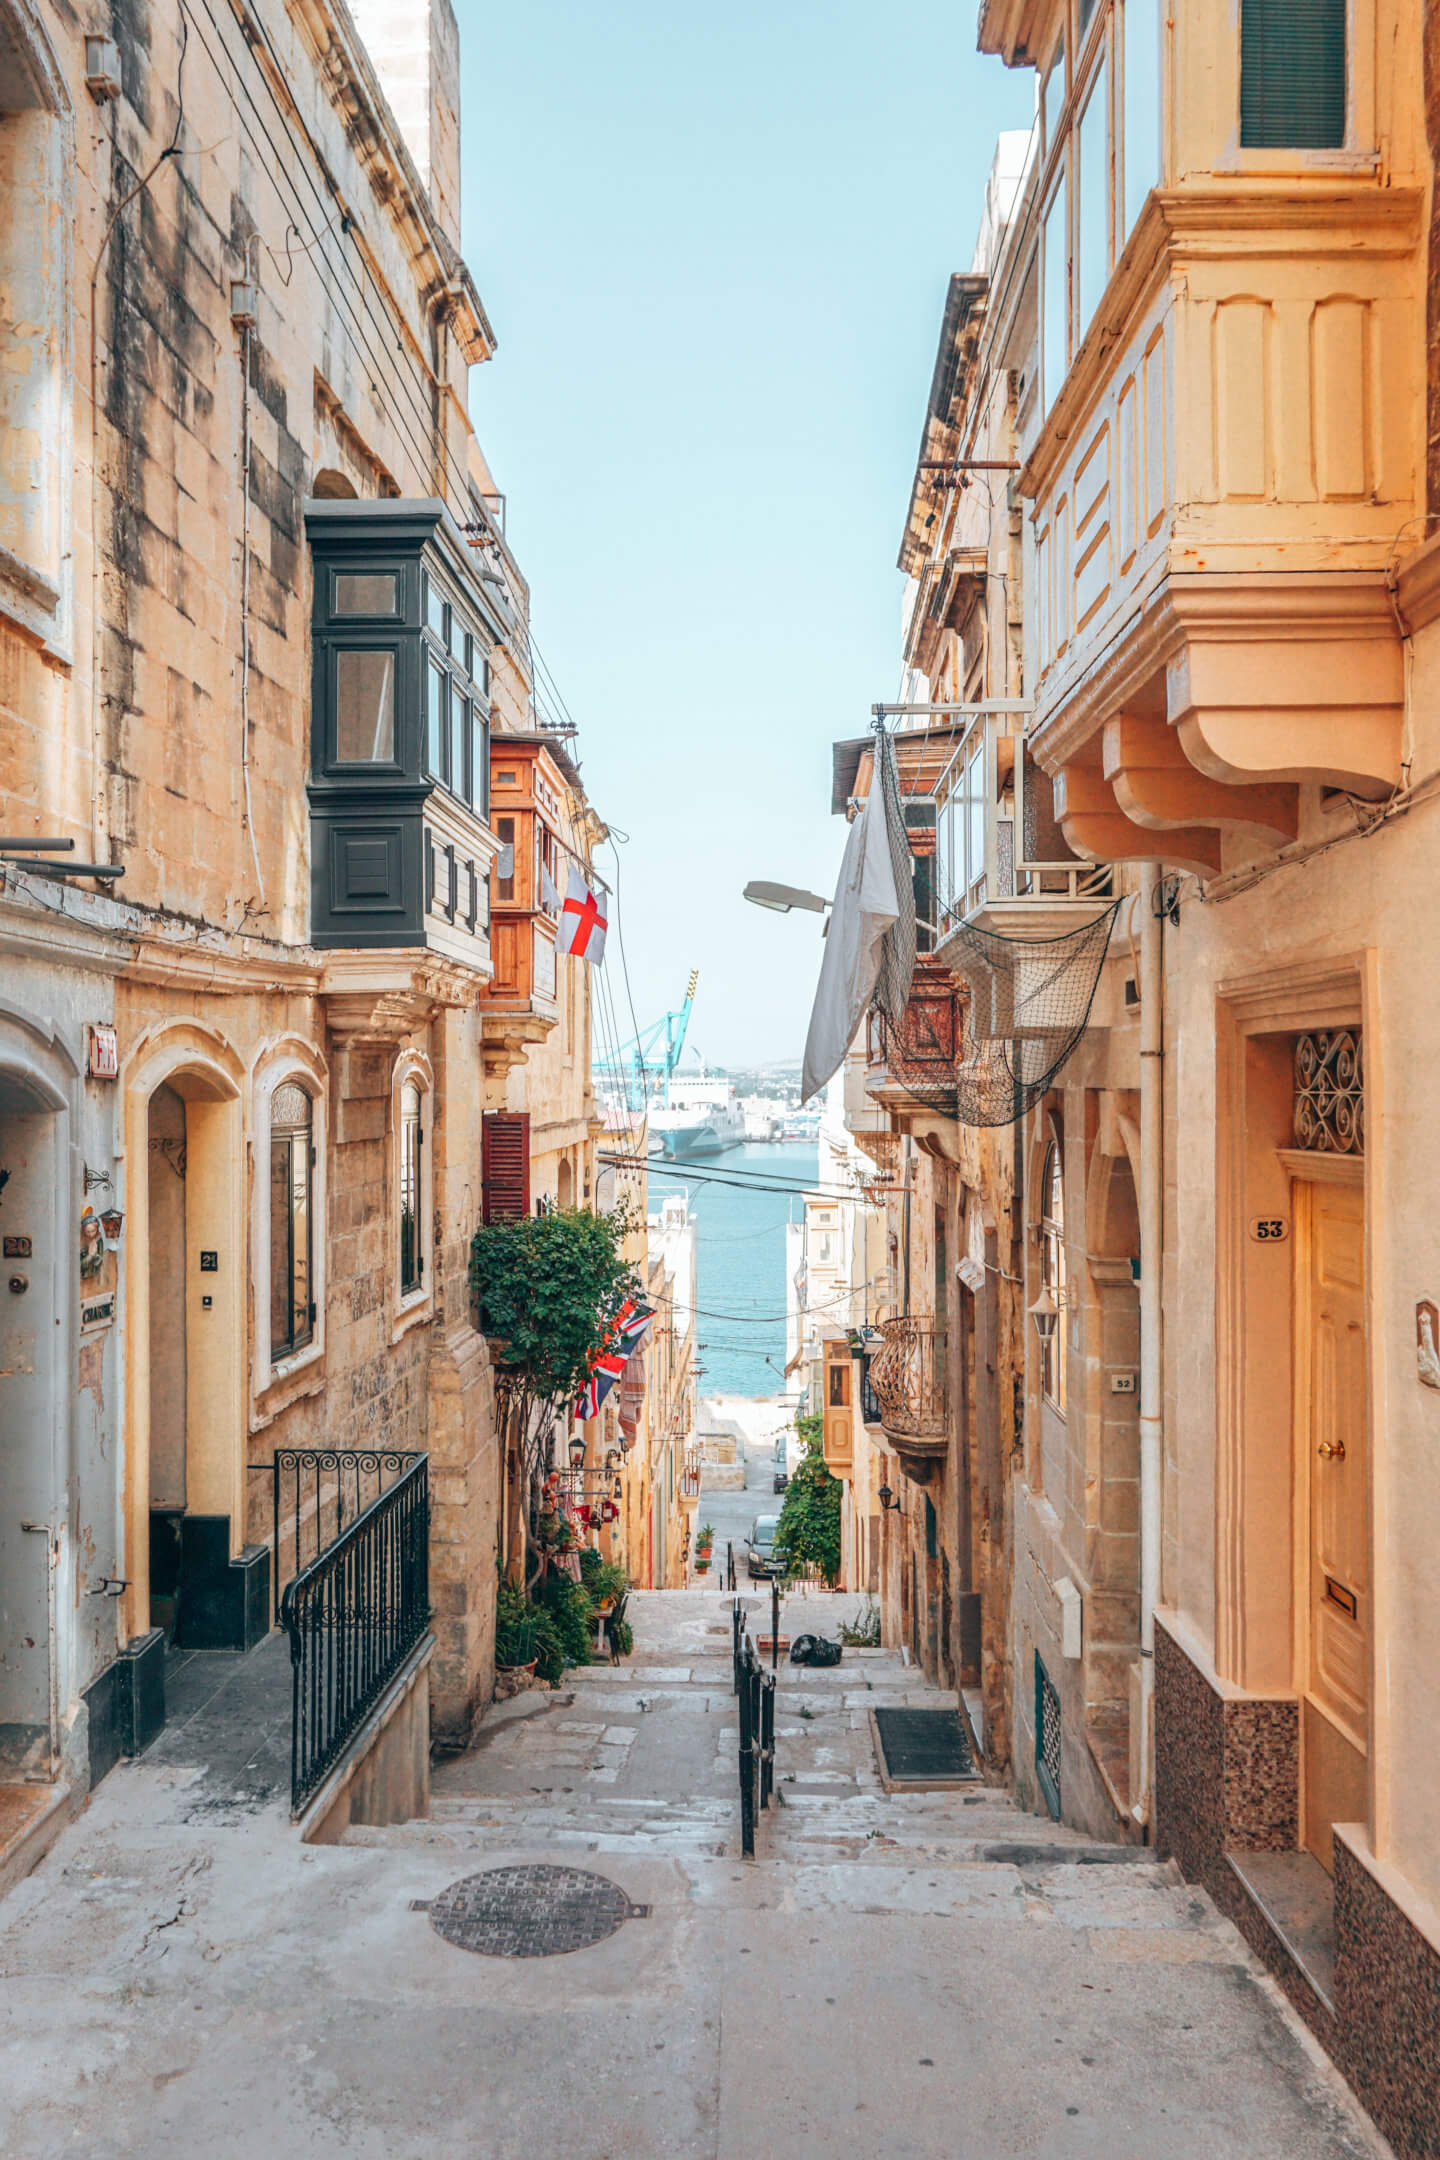 Malta Travel Guide: “Europe's Best Kept Secret”